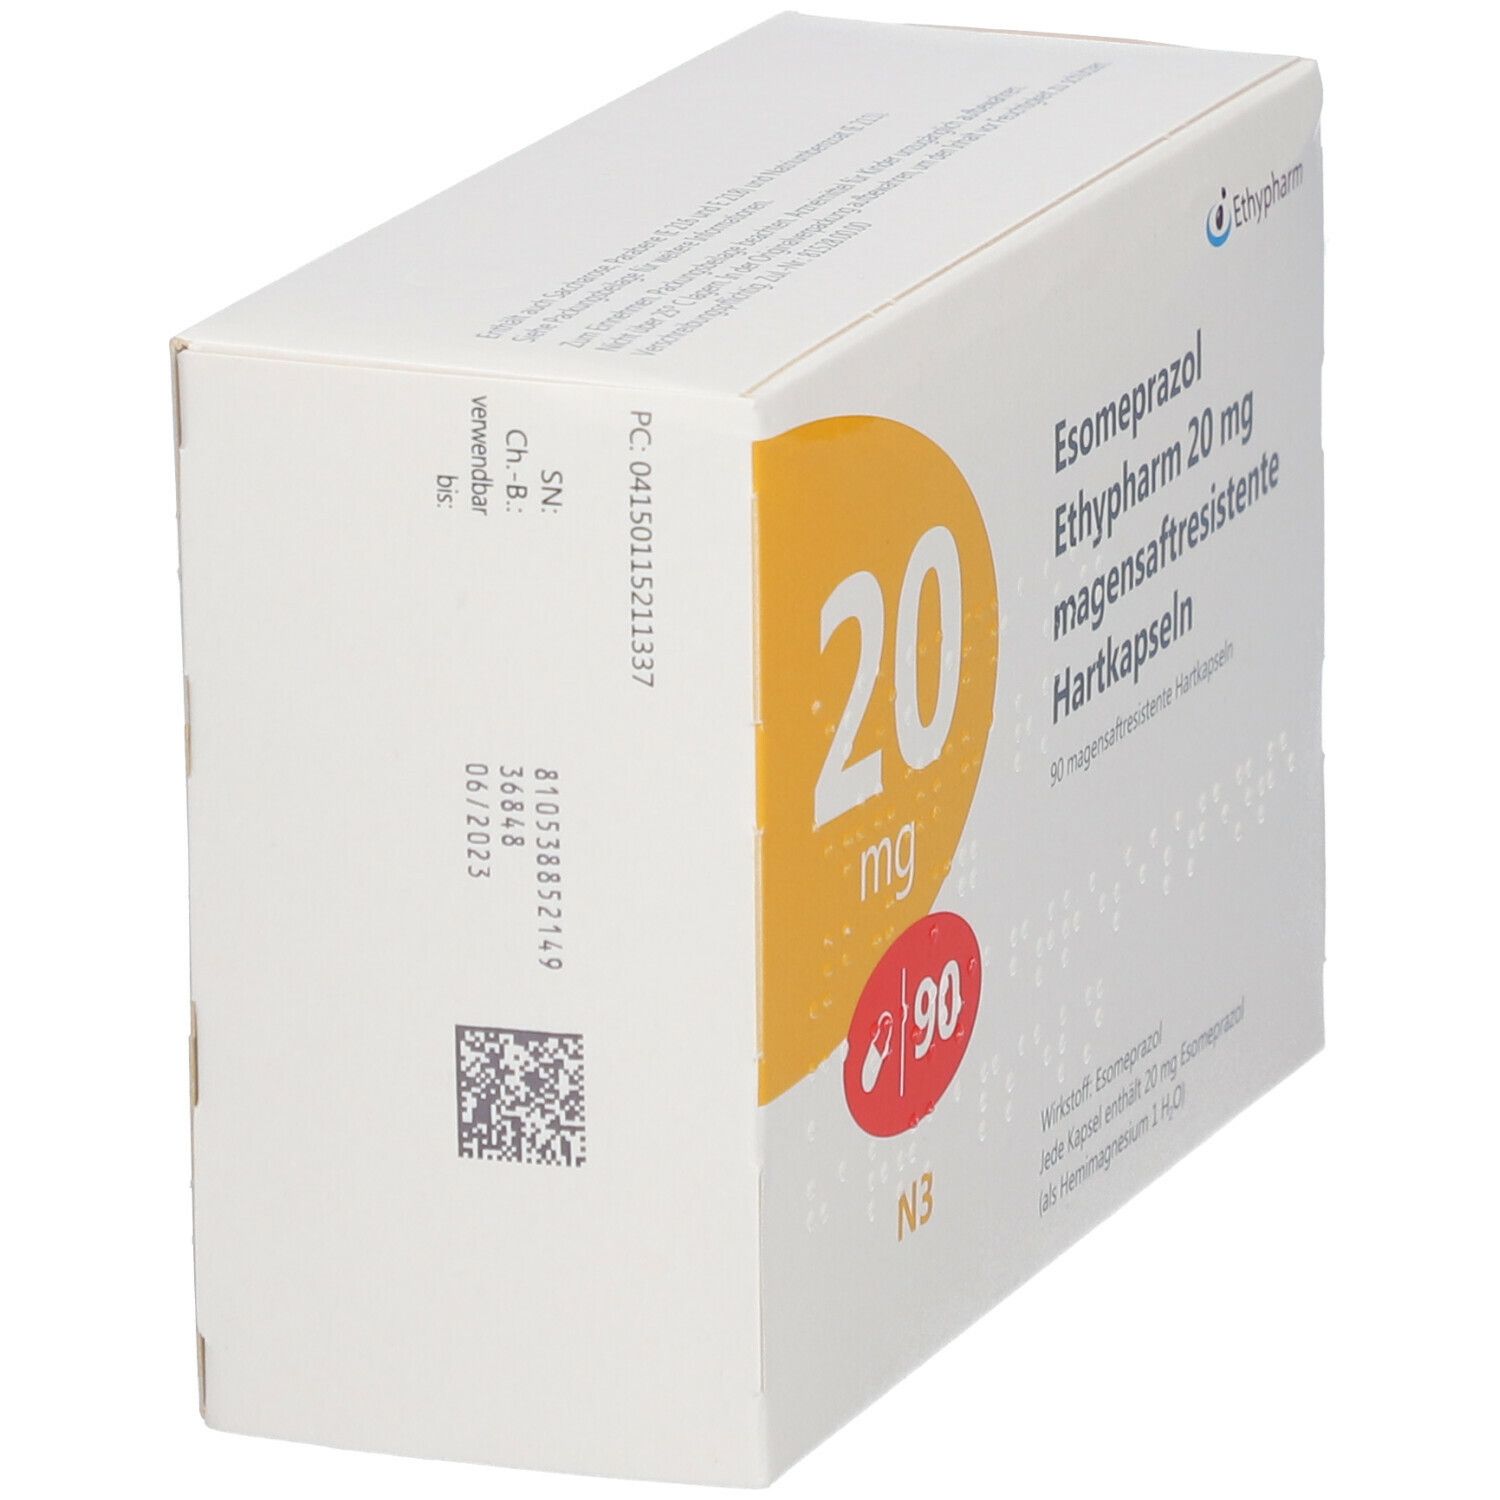 Esomeprazol Ethypharm® 20 mg